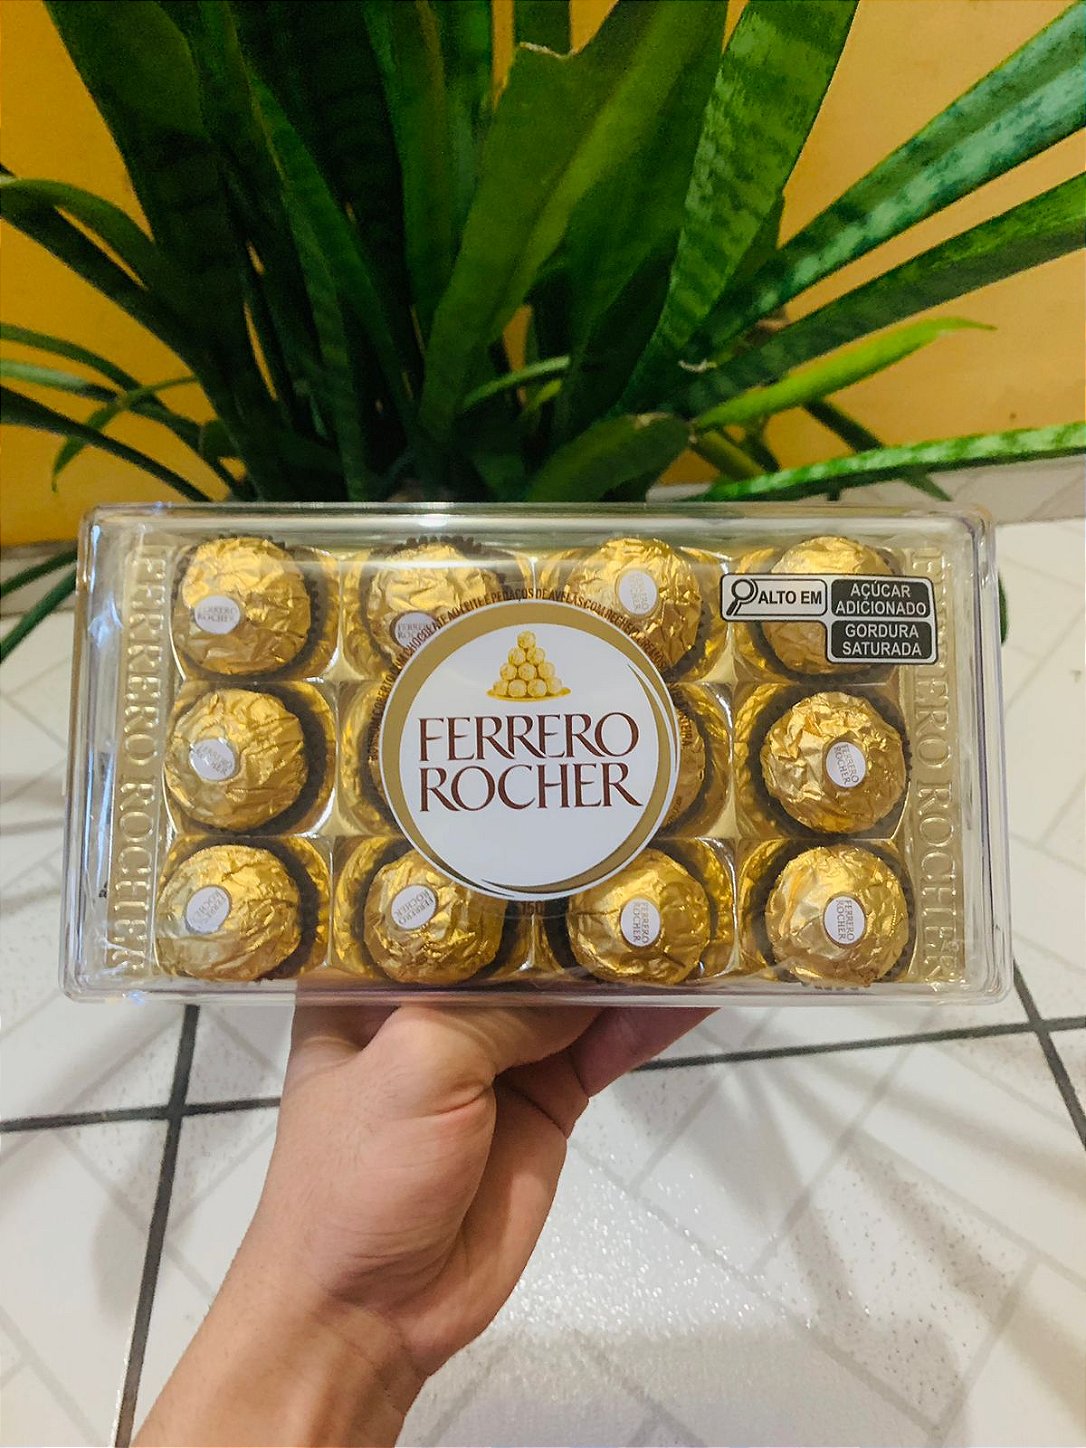 Ferrero Rocher Chocolate Caixa com 12 Unidades 150g - Johnny Doces  Importados - Chocolates, Biscoitos, Produtos Orientais